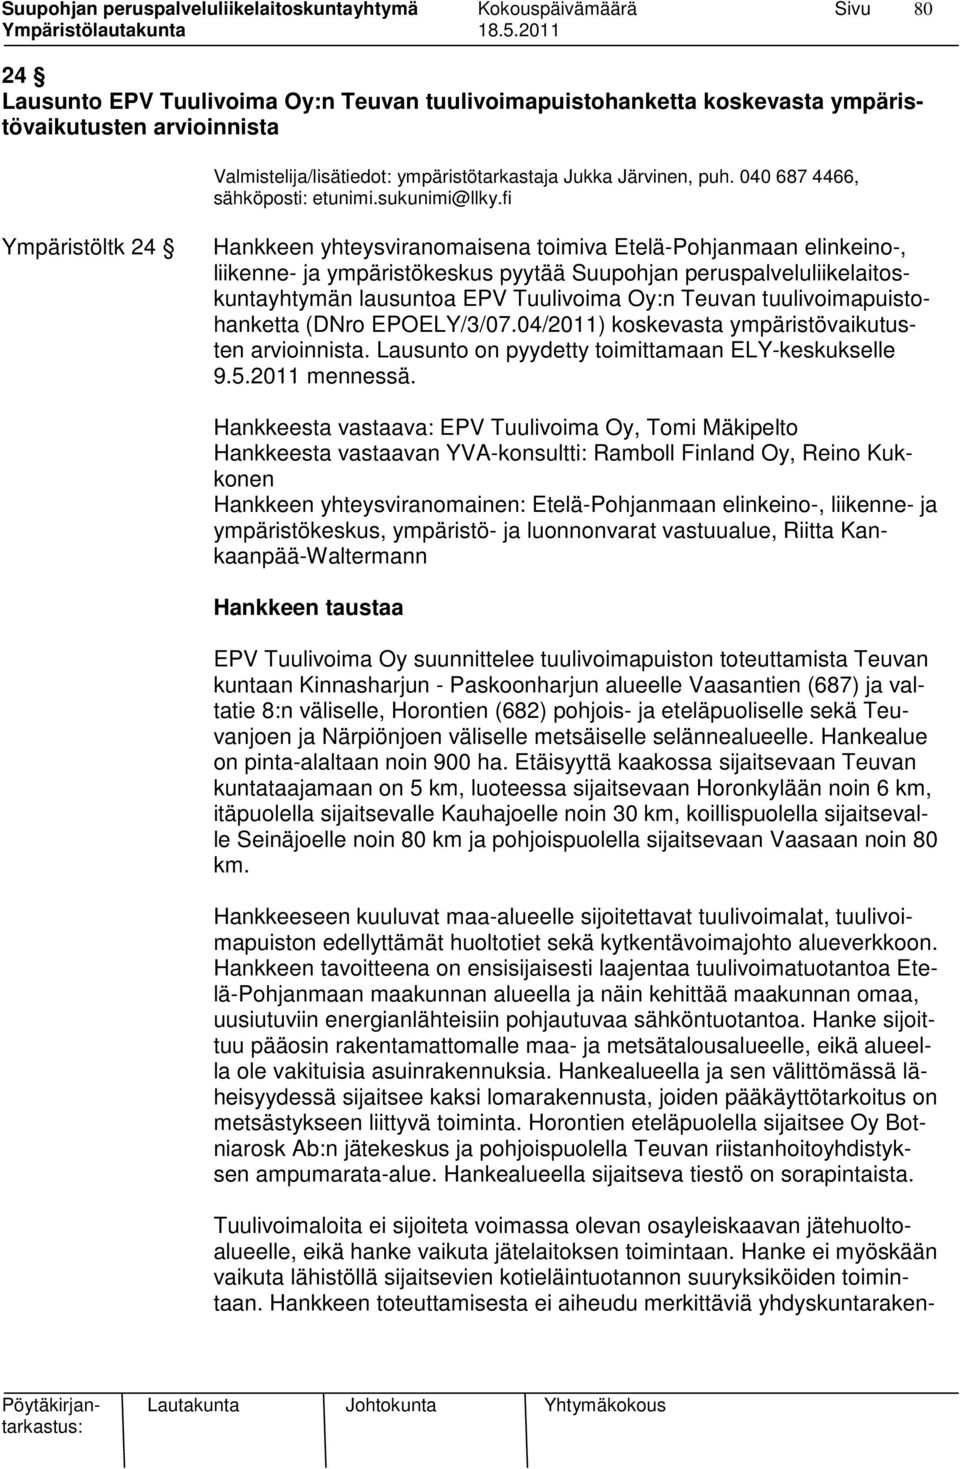 fi Ympäristöltk 24 Hankkeen yhteysviranomaisena toimiva Etelä-Pohjanmaan elinkeino-, liikenne- ja ympäristökeskus pyytää Suupohjan peruspalveluliikelaitoskuntayhtymän lausuntoa EPV Tuulivoima Oy:n